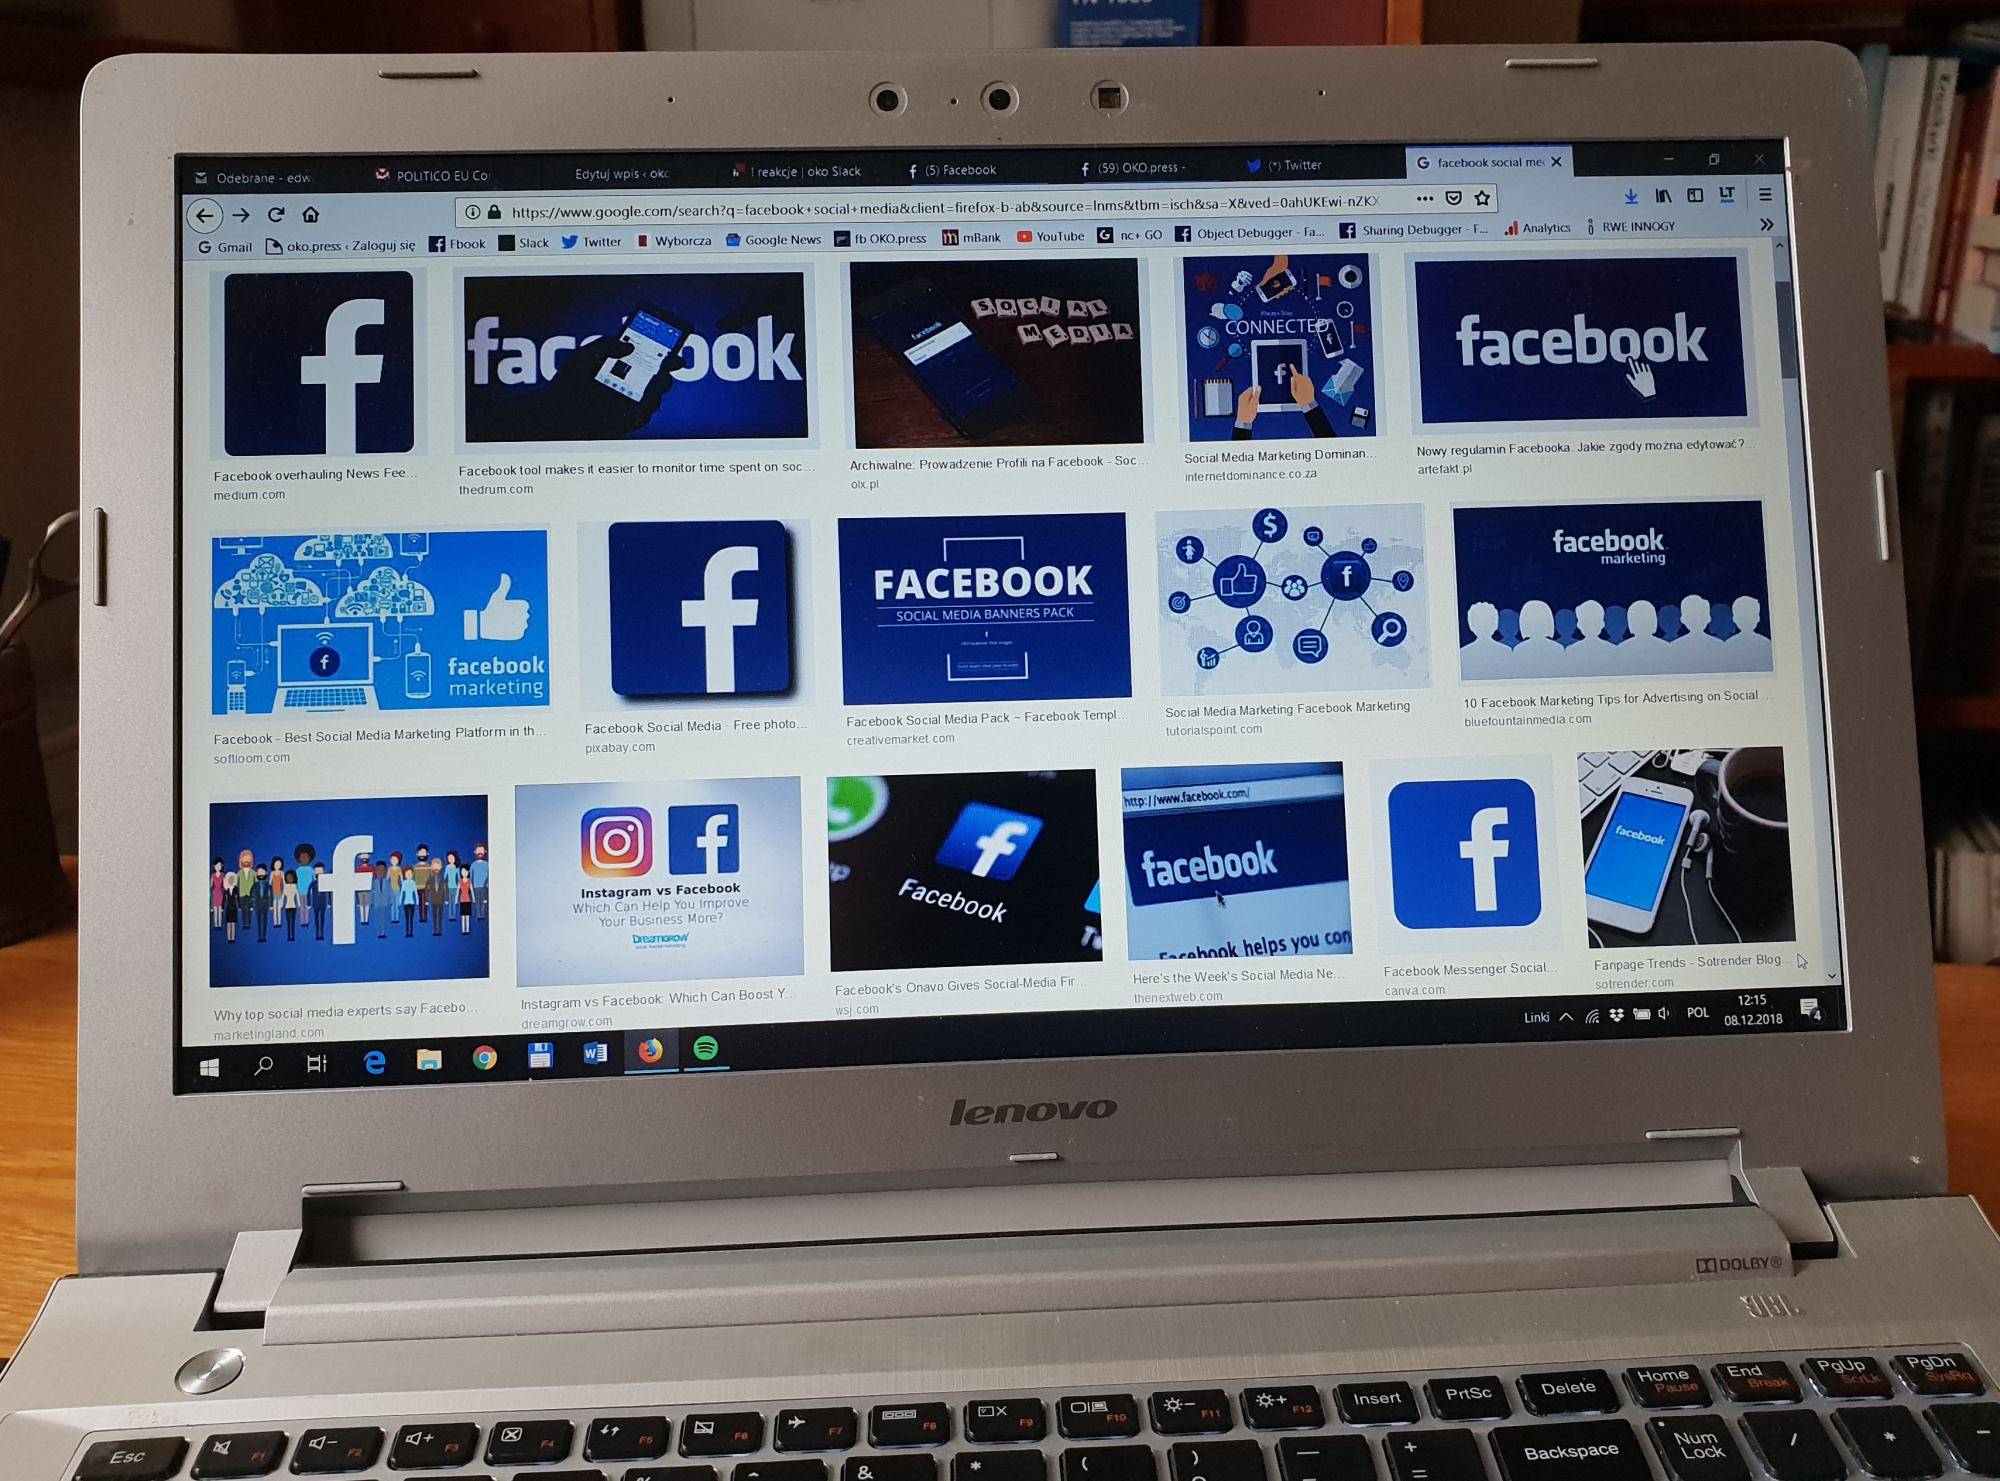 Ekran laptopa, na którym wyświetlnae są różne ikony Facebooka